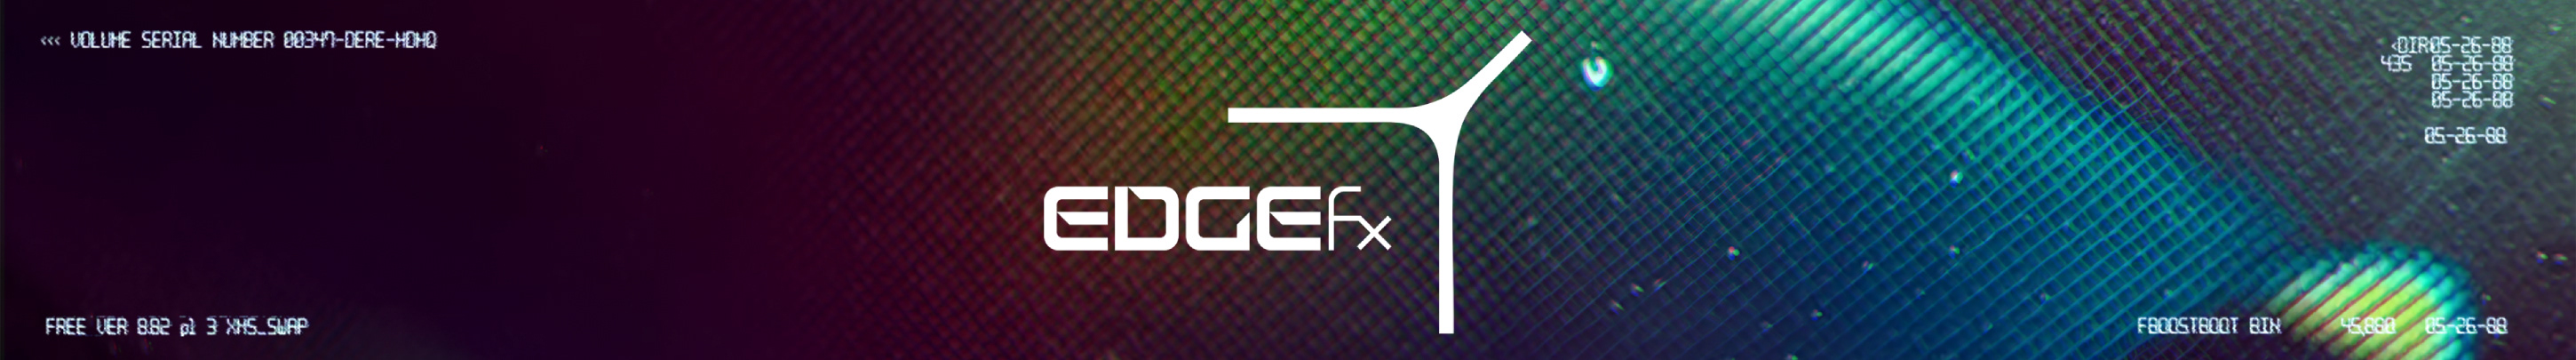 Edge Fx's profile banner